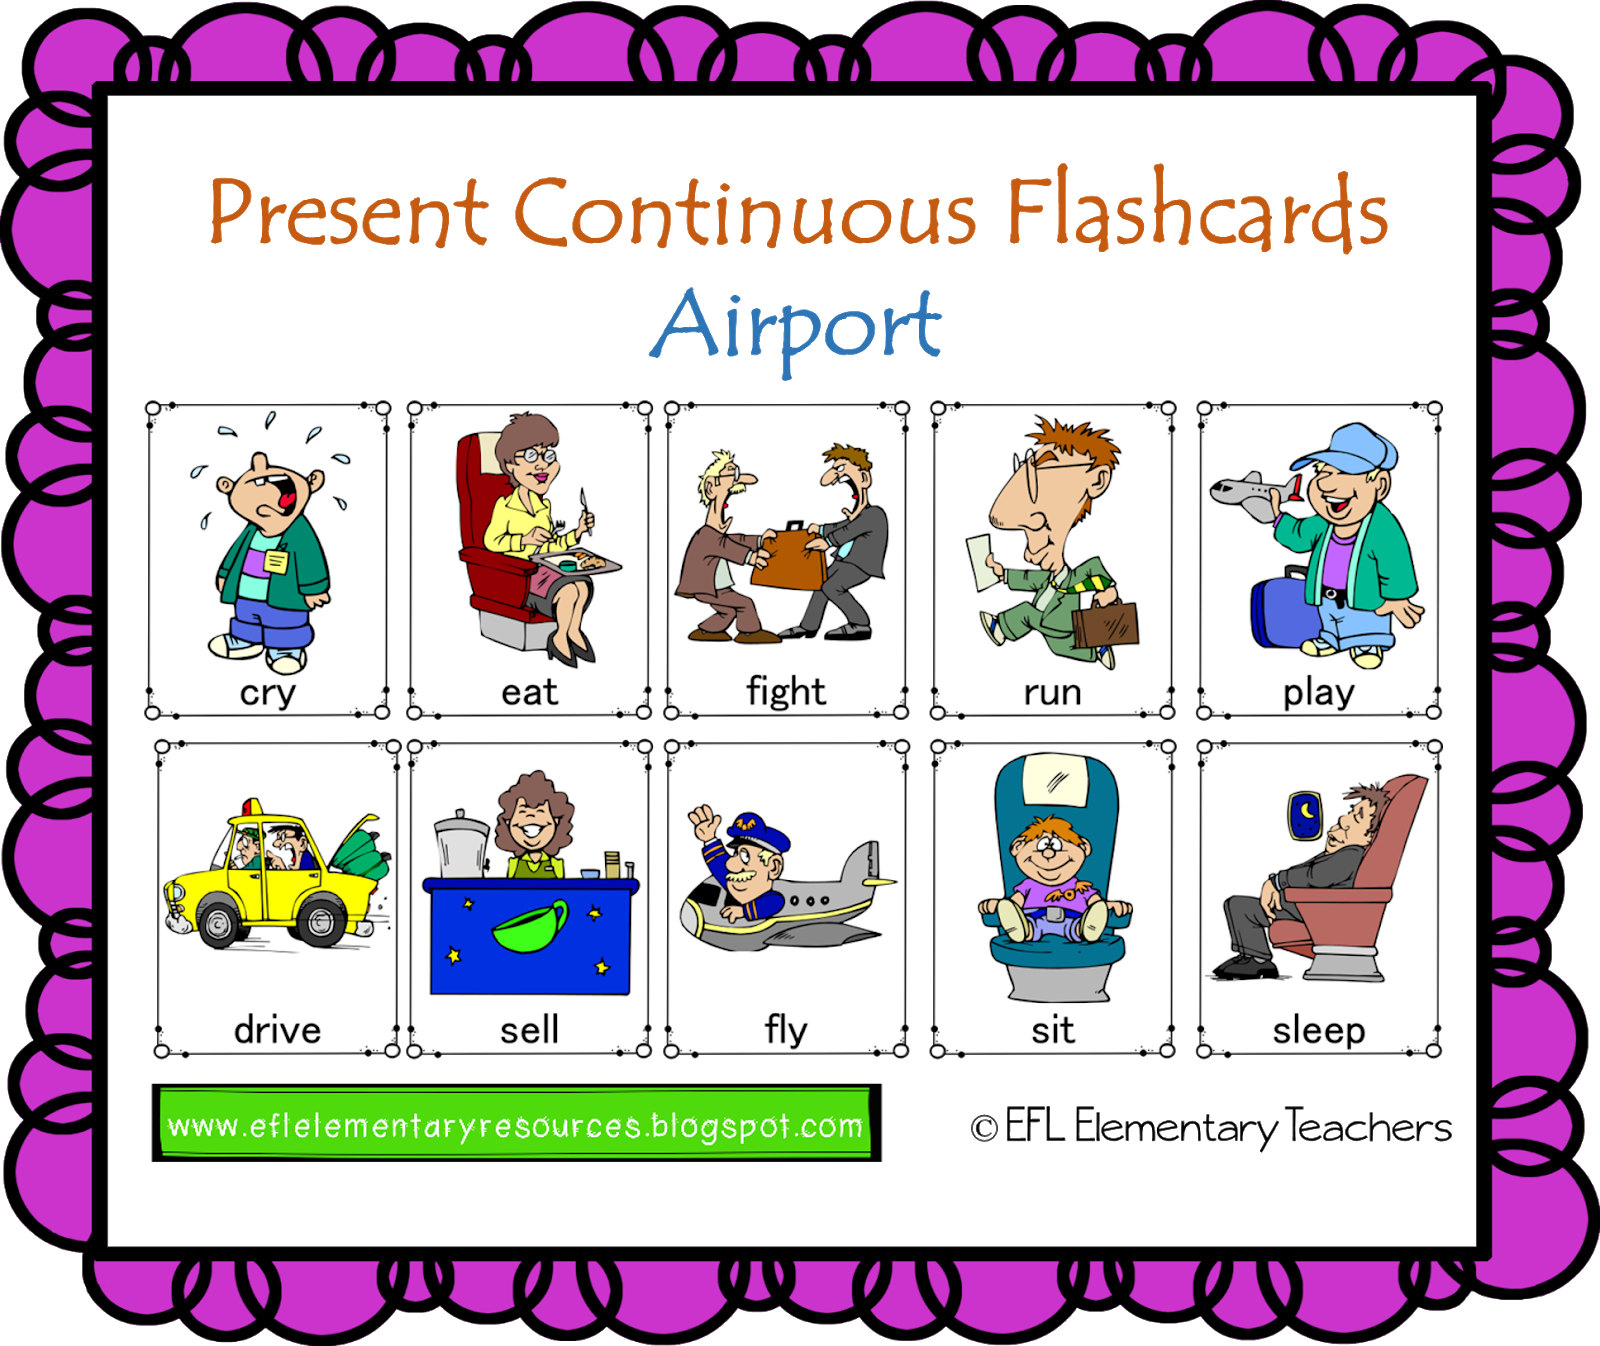 Animal continuous. Present Continuous. Present Continuous упражнения с картинками. Present Continuous карточки. Картинки для present Continuous для детей.